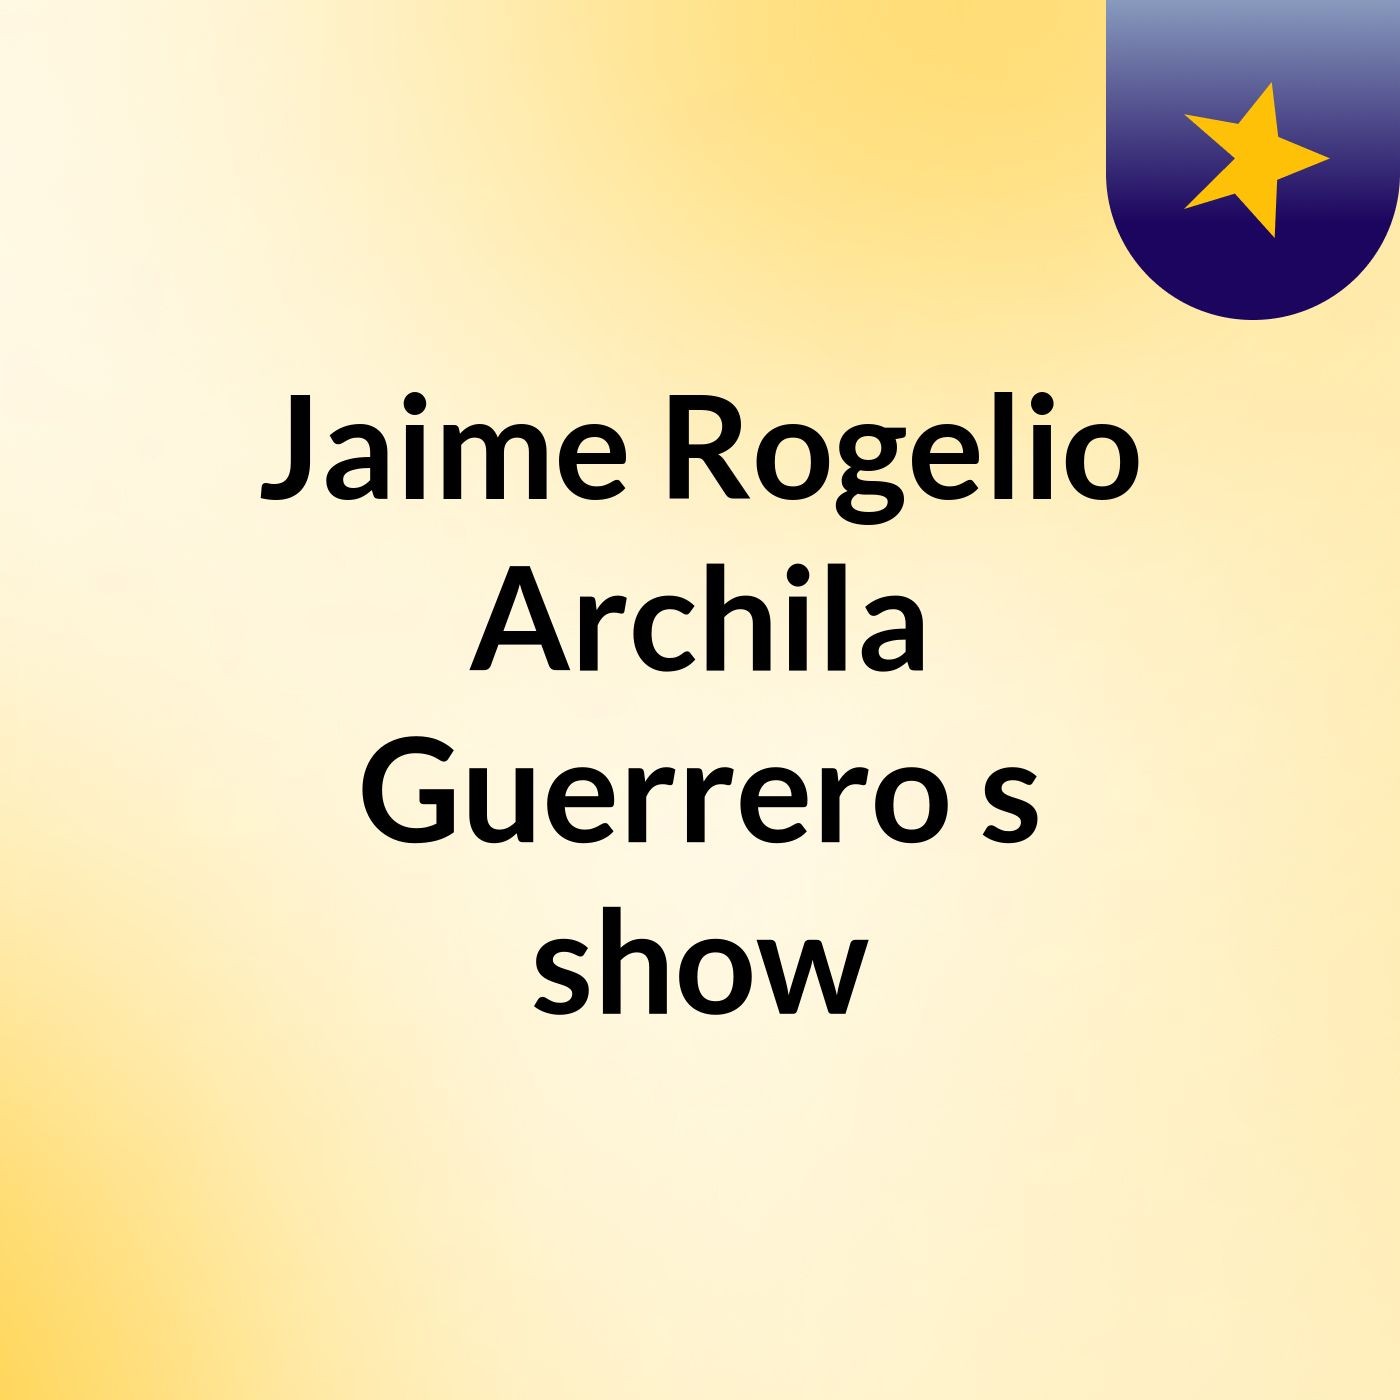 Jaime Rogelio Archila Guerrero's show